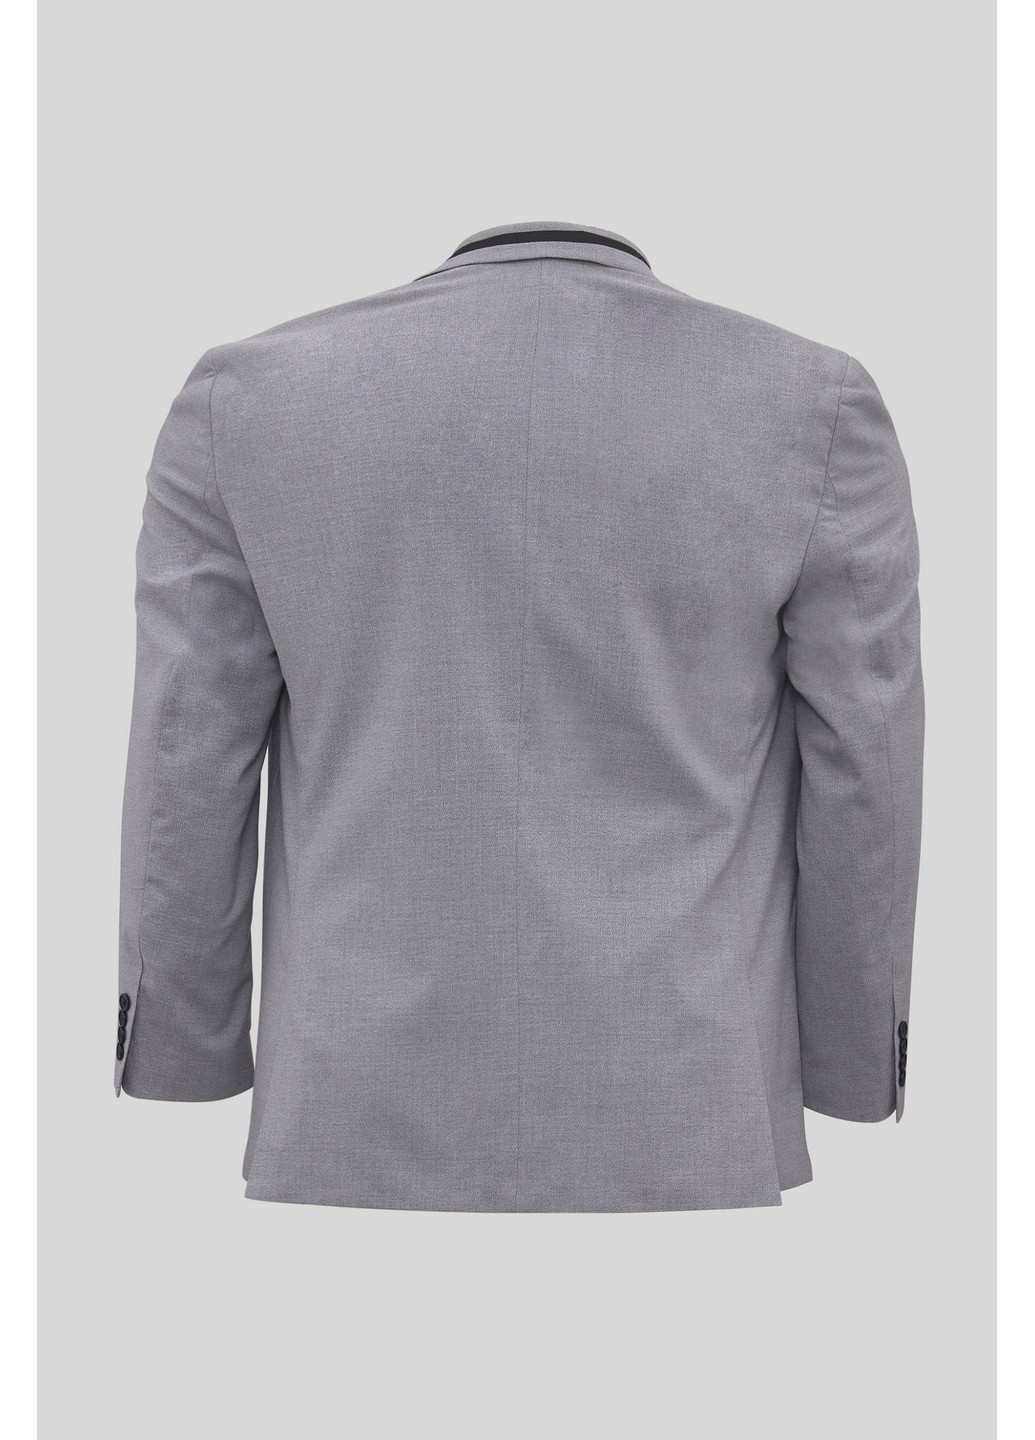 Пиджак C&A меланж светло-серый деловой полиэстер